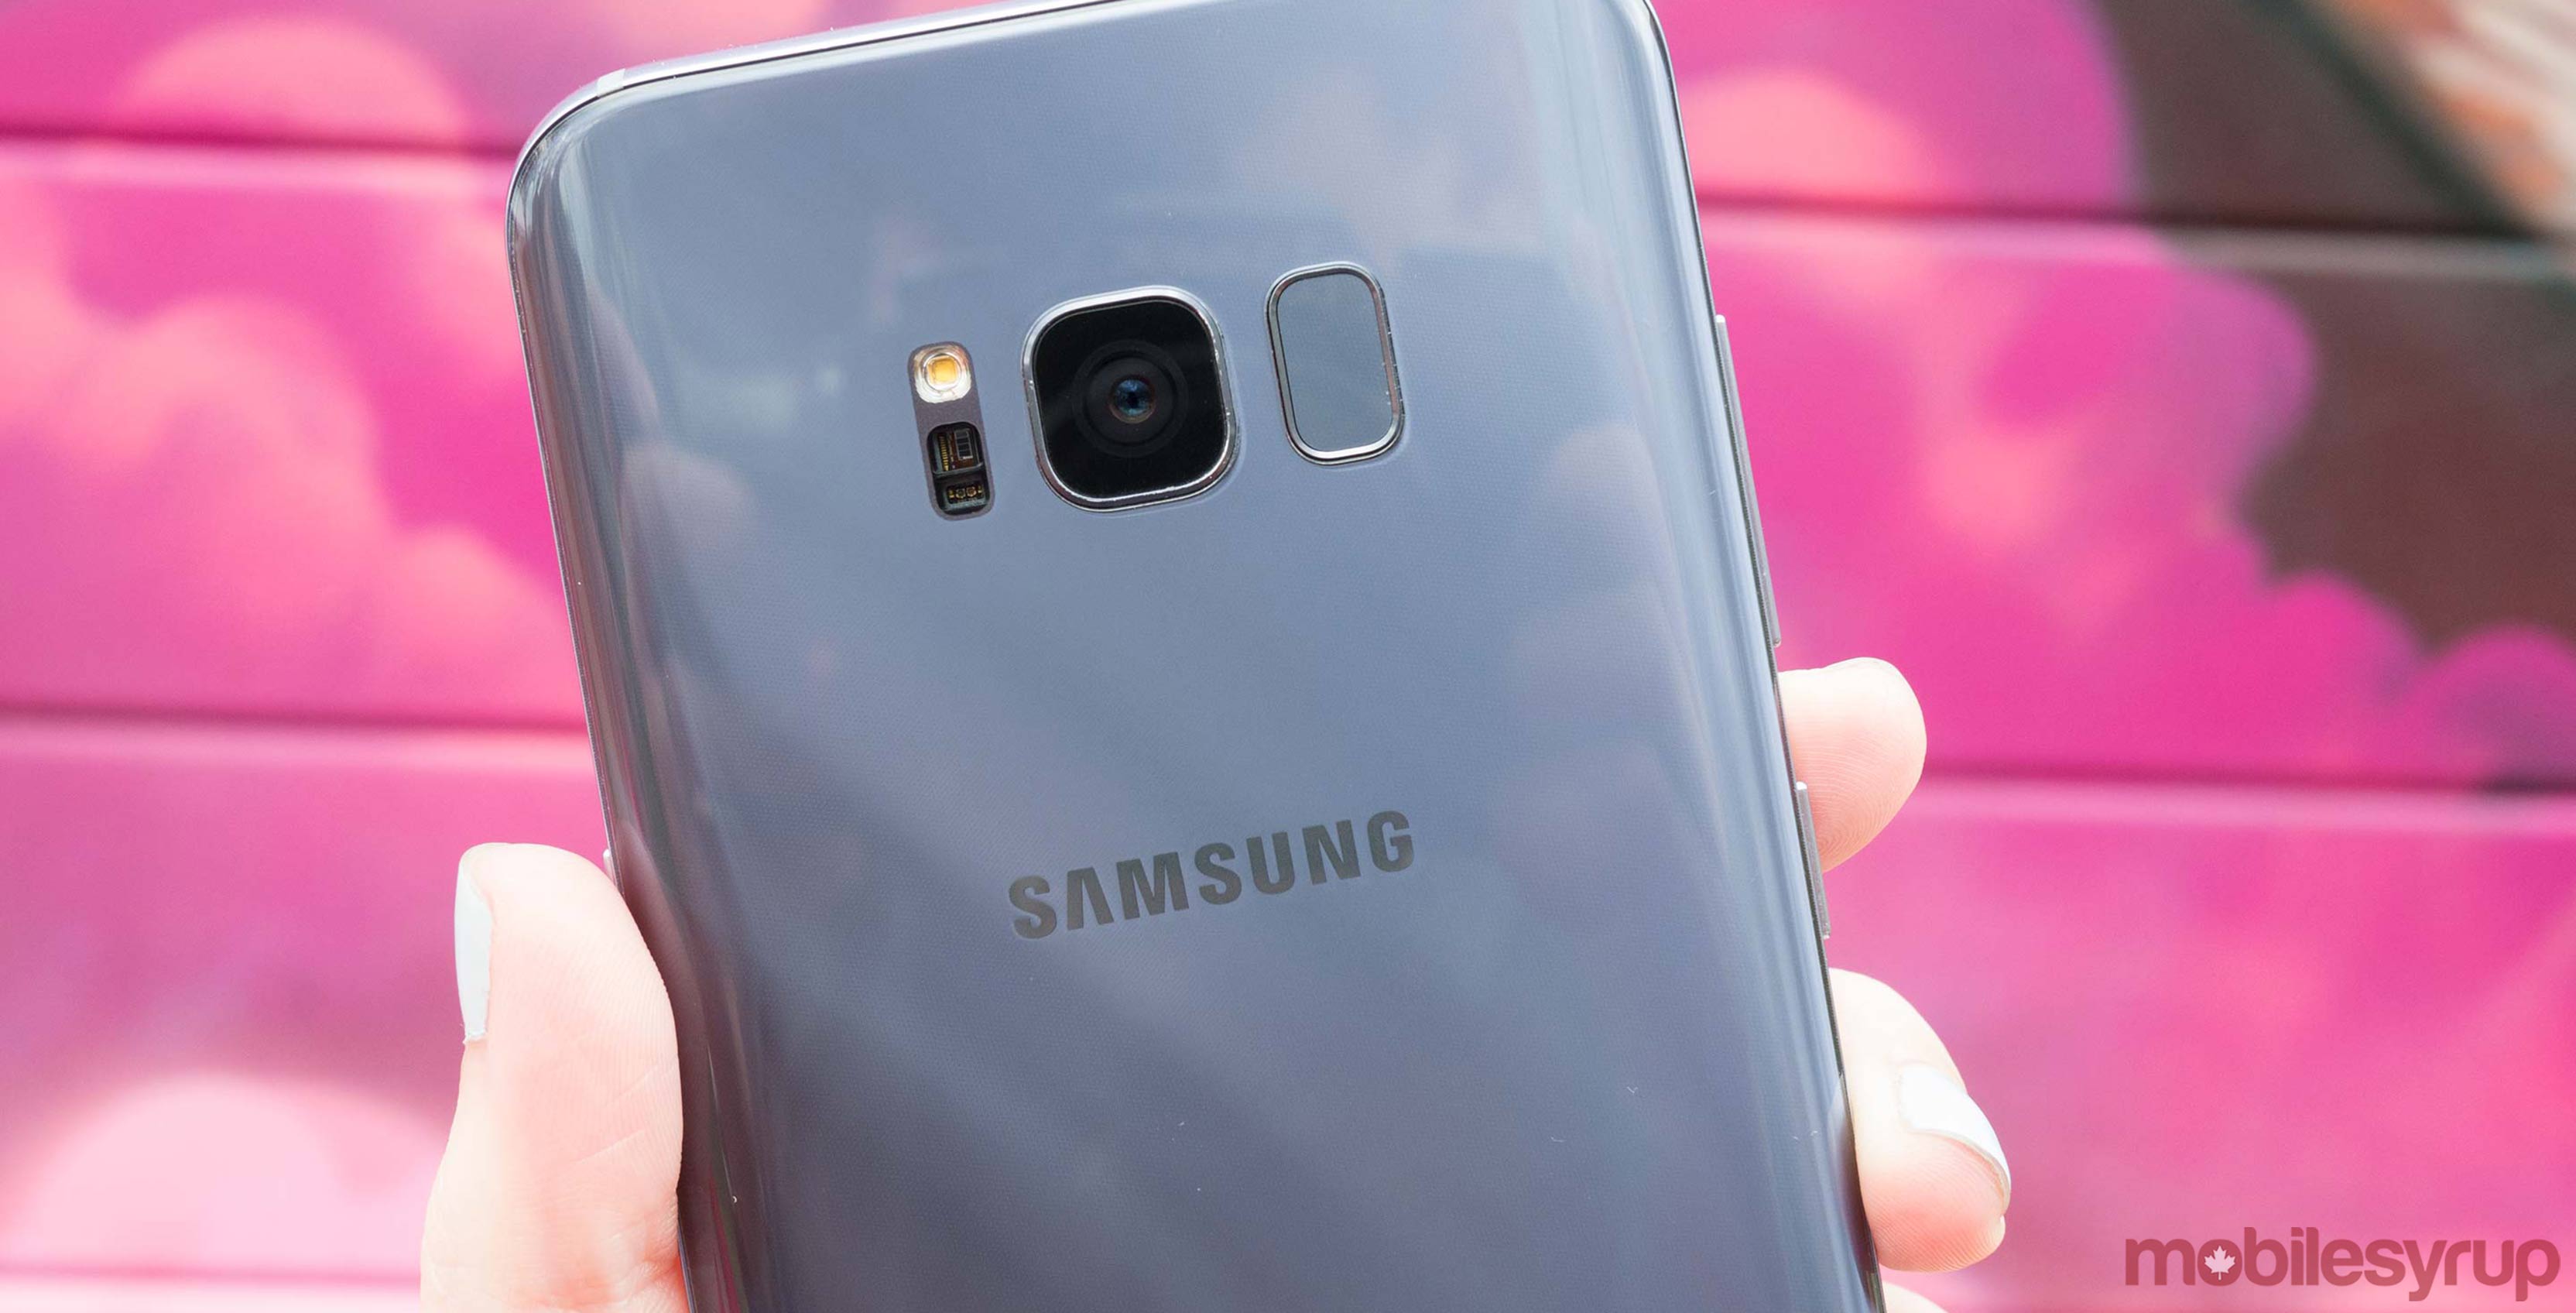 Samsung Galaxy S8 camera header